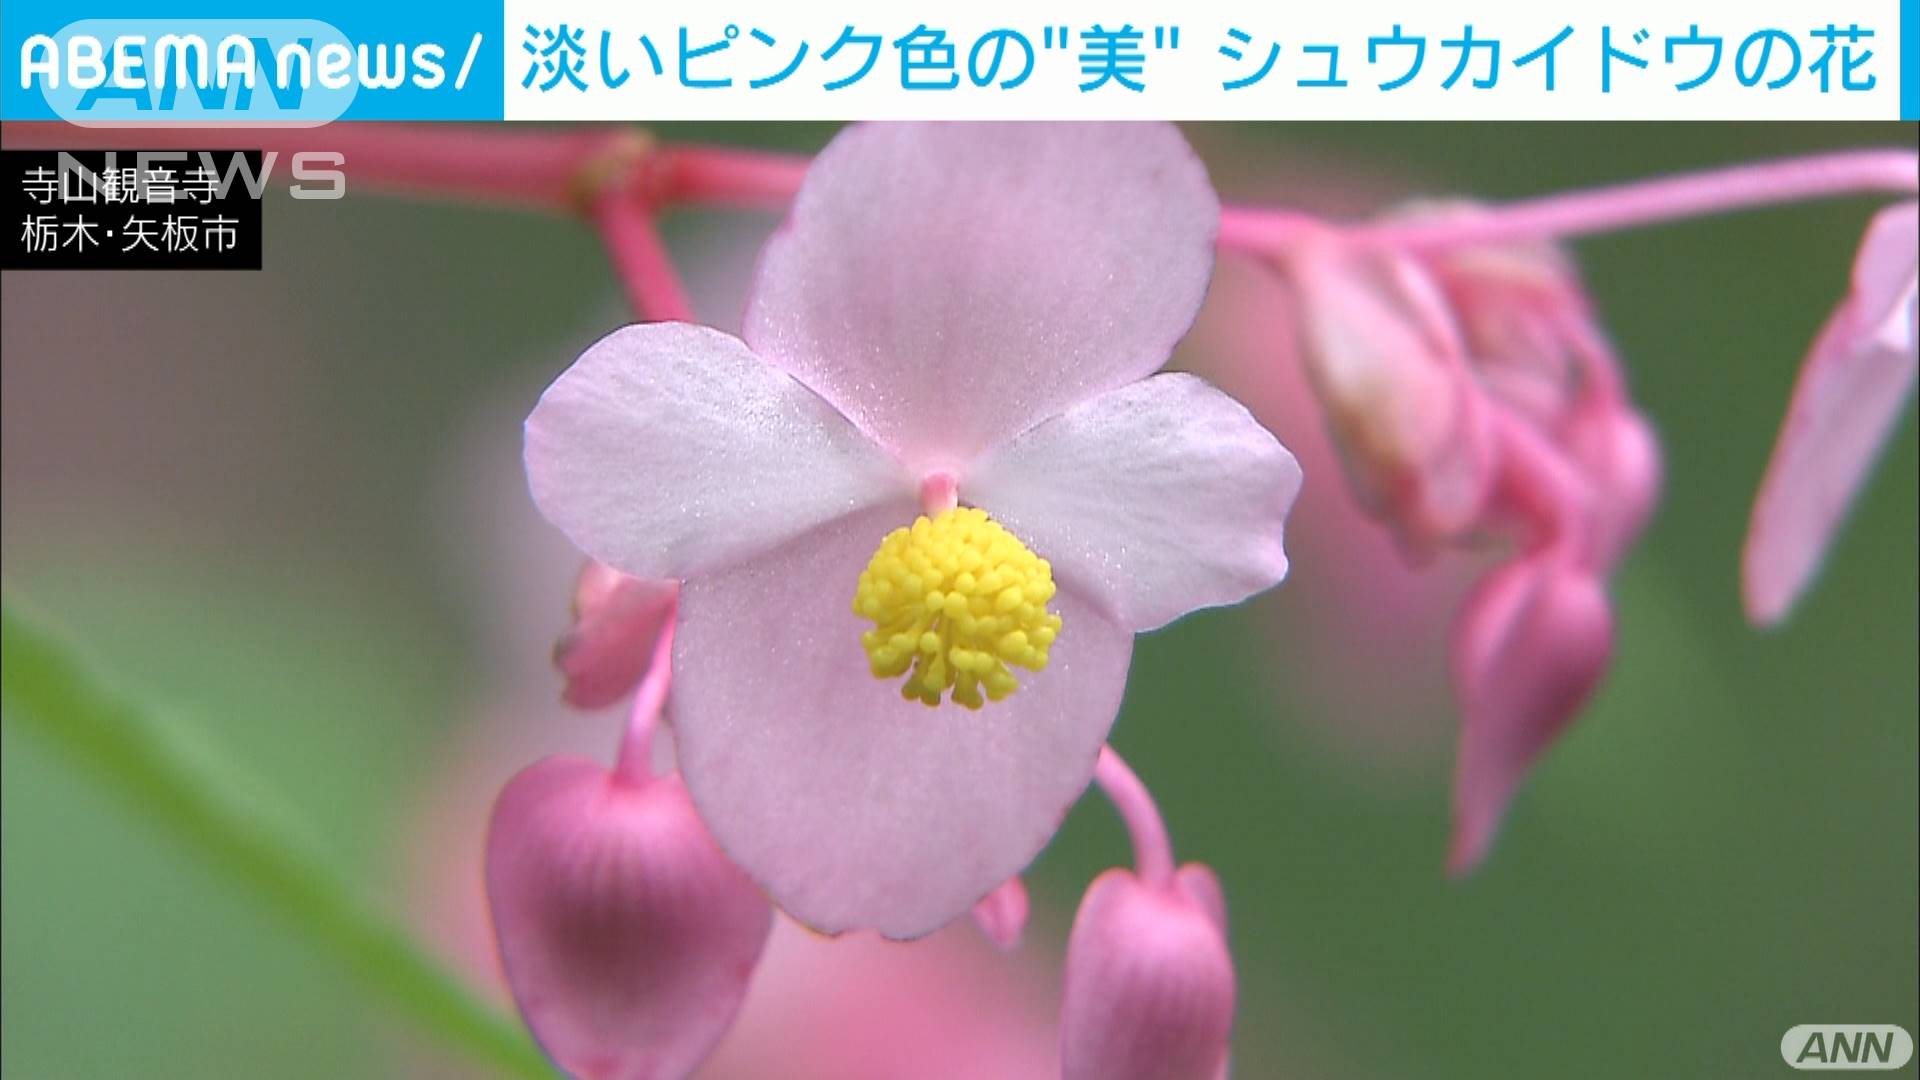 シュウカイドウ の花が見ごろ 10万株咲き誇る テレ朝news テレビ朝日のニュースサイト